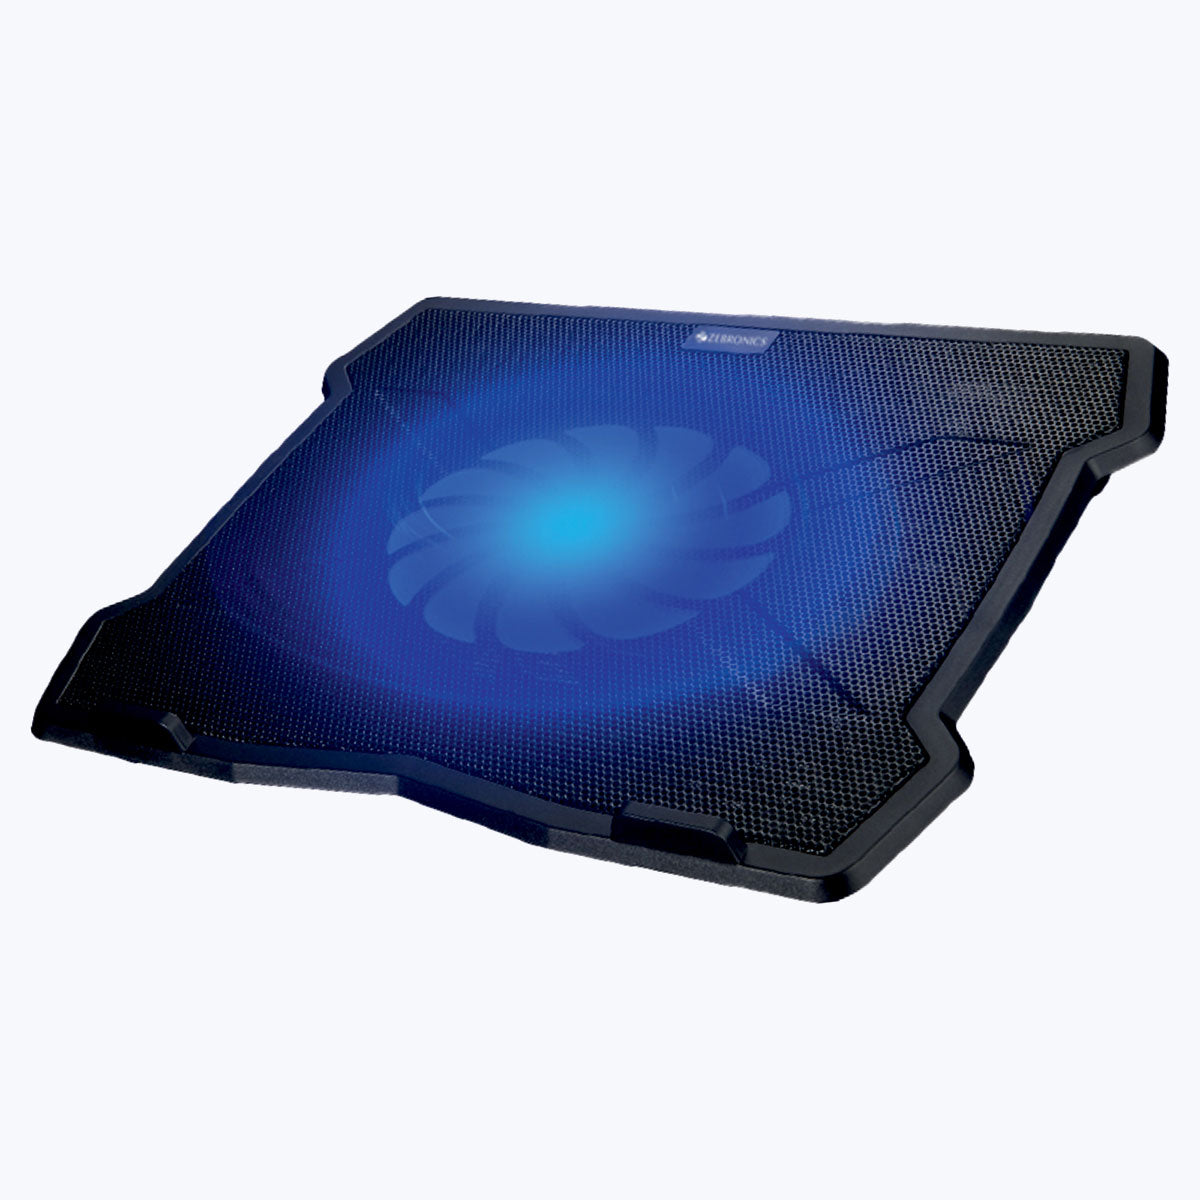 Zeb-NC2100 - Laptop Cooling Pad - Zebronics